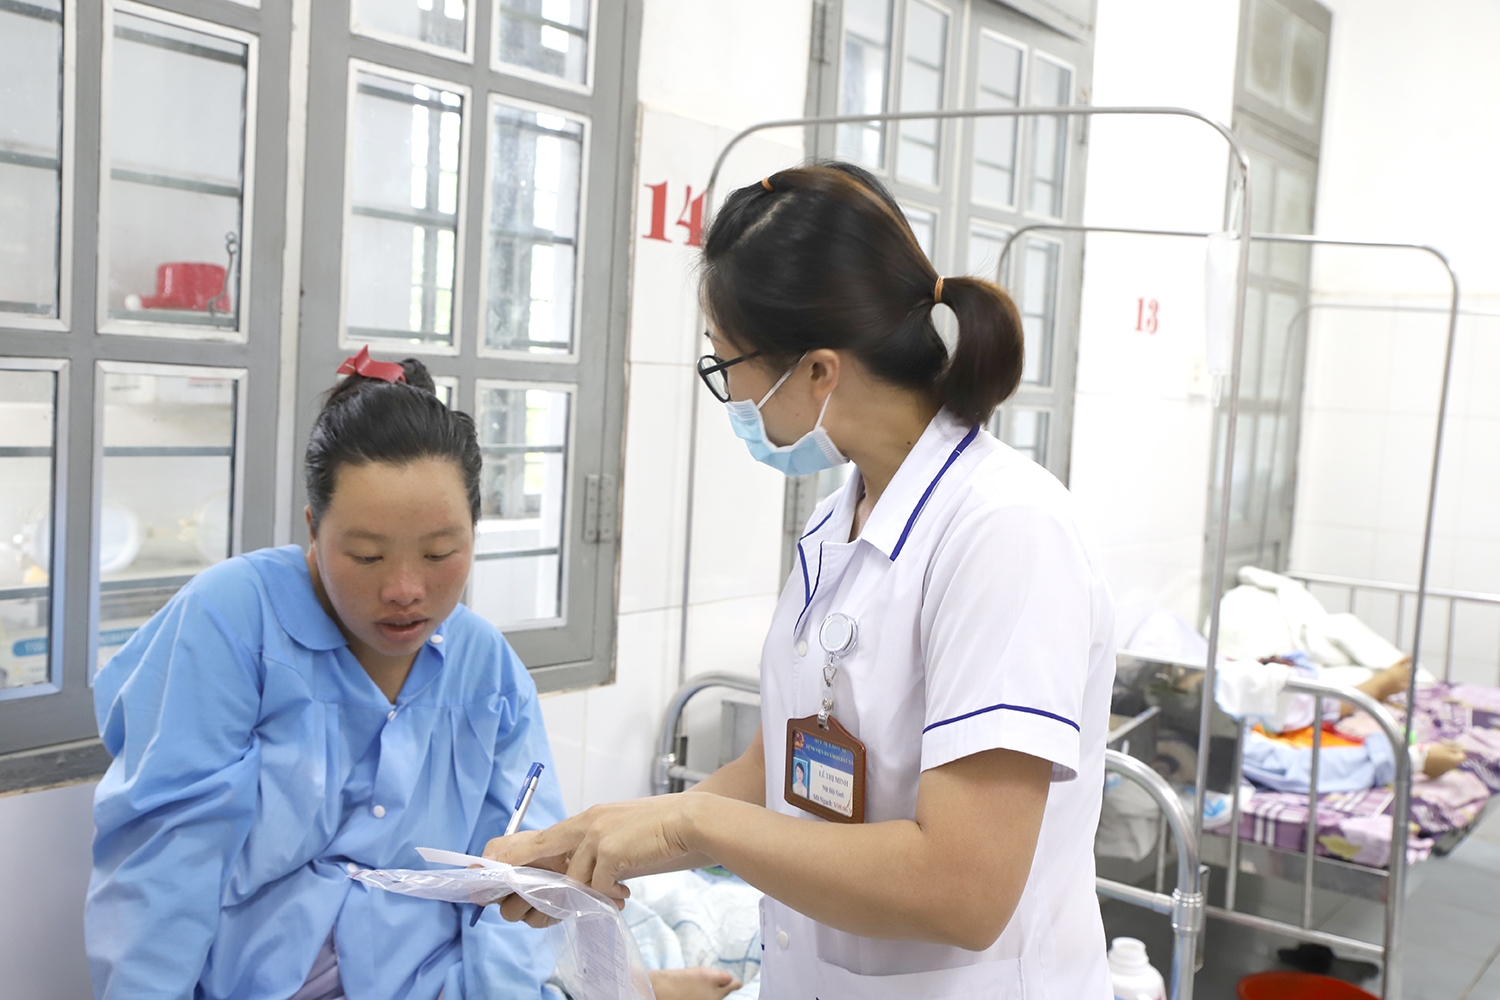  Người dân được cán bộ y tế hướng dẫn thủ thục khi nhập viện